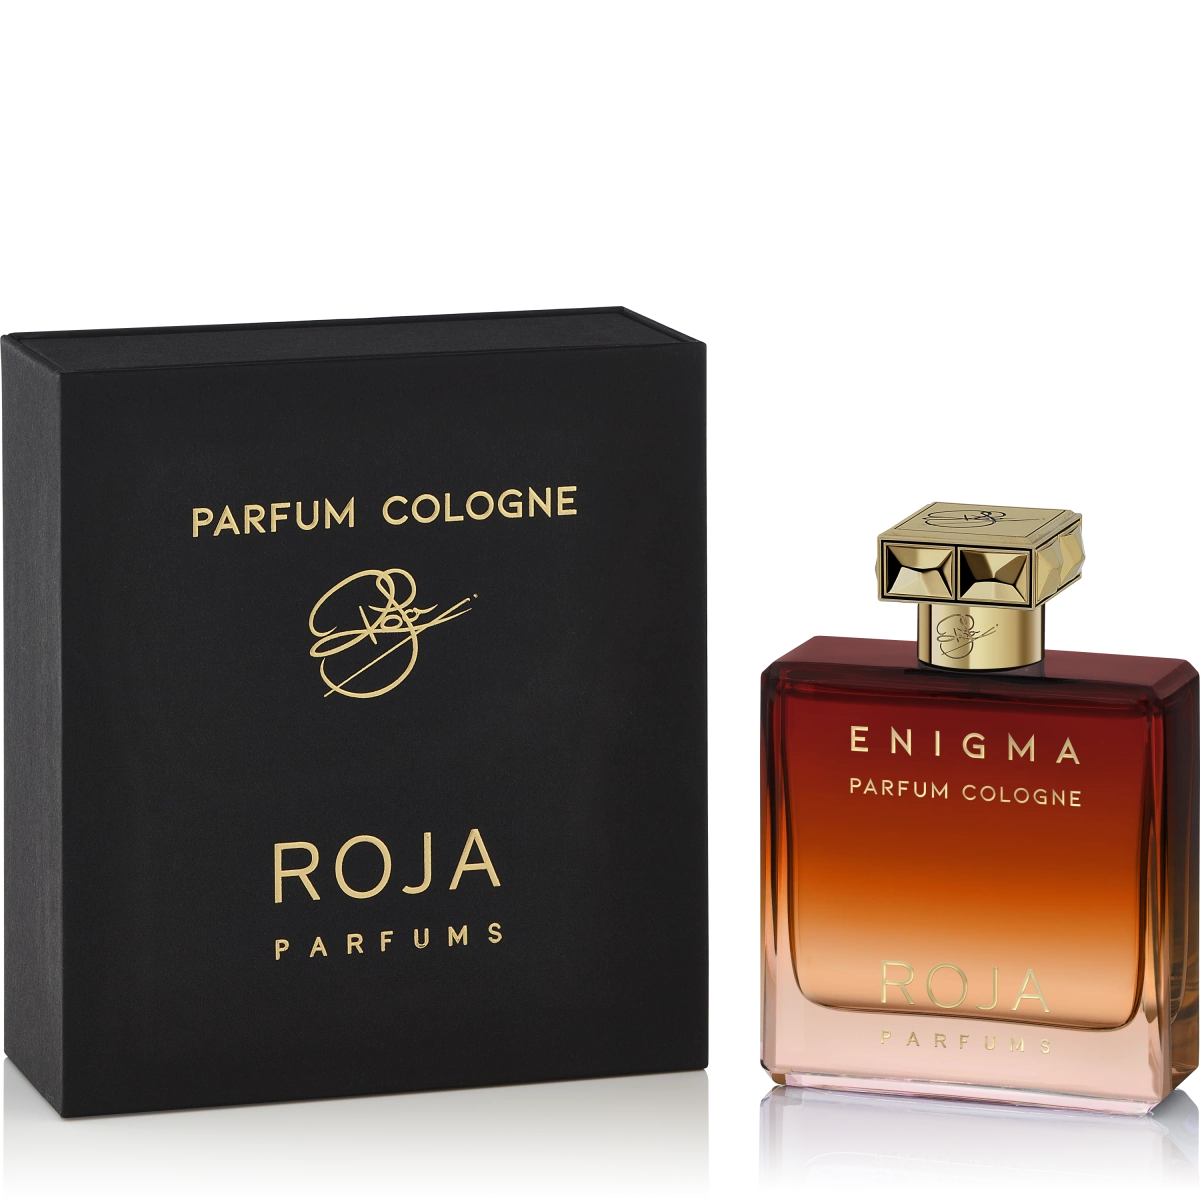 enigma-pour-homme-parfum-cologne-pack-roja.webp